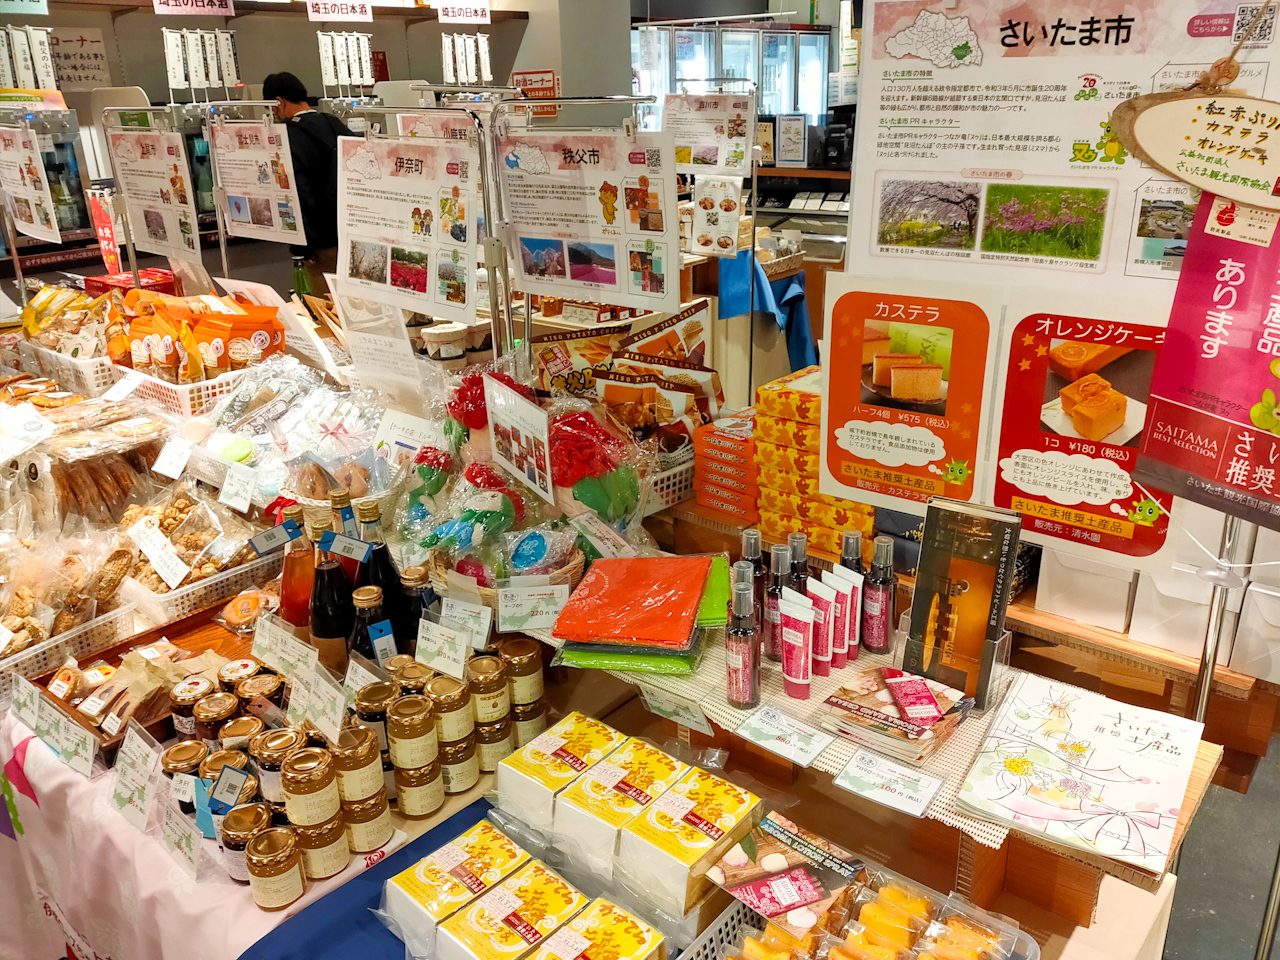 1階では「さいたま市」を始め、埼玉県内の各自治体の特産品を販売